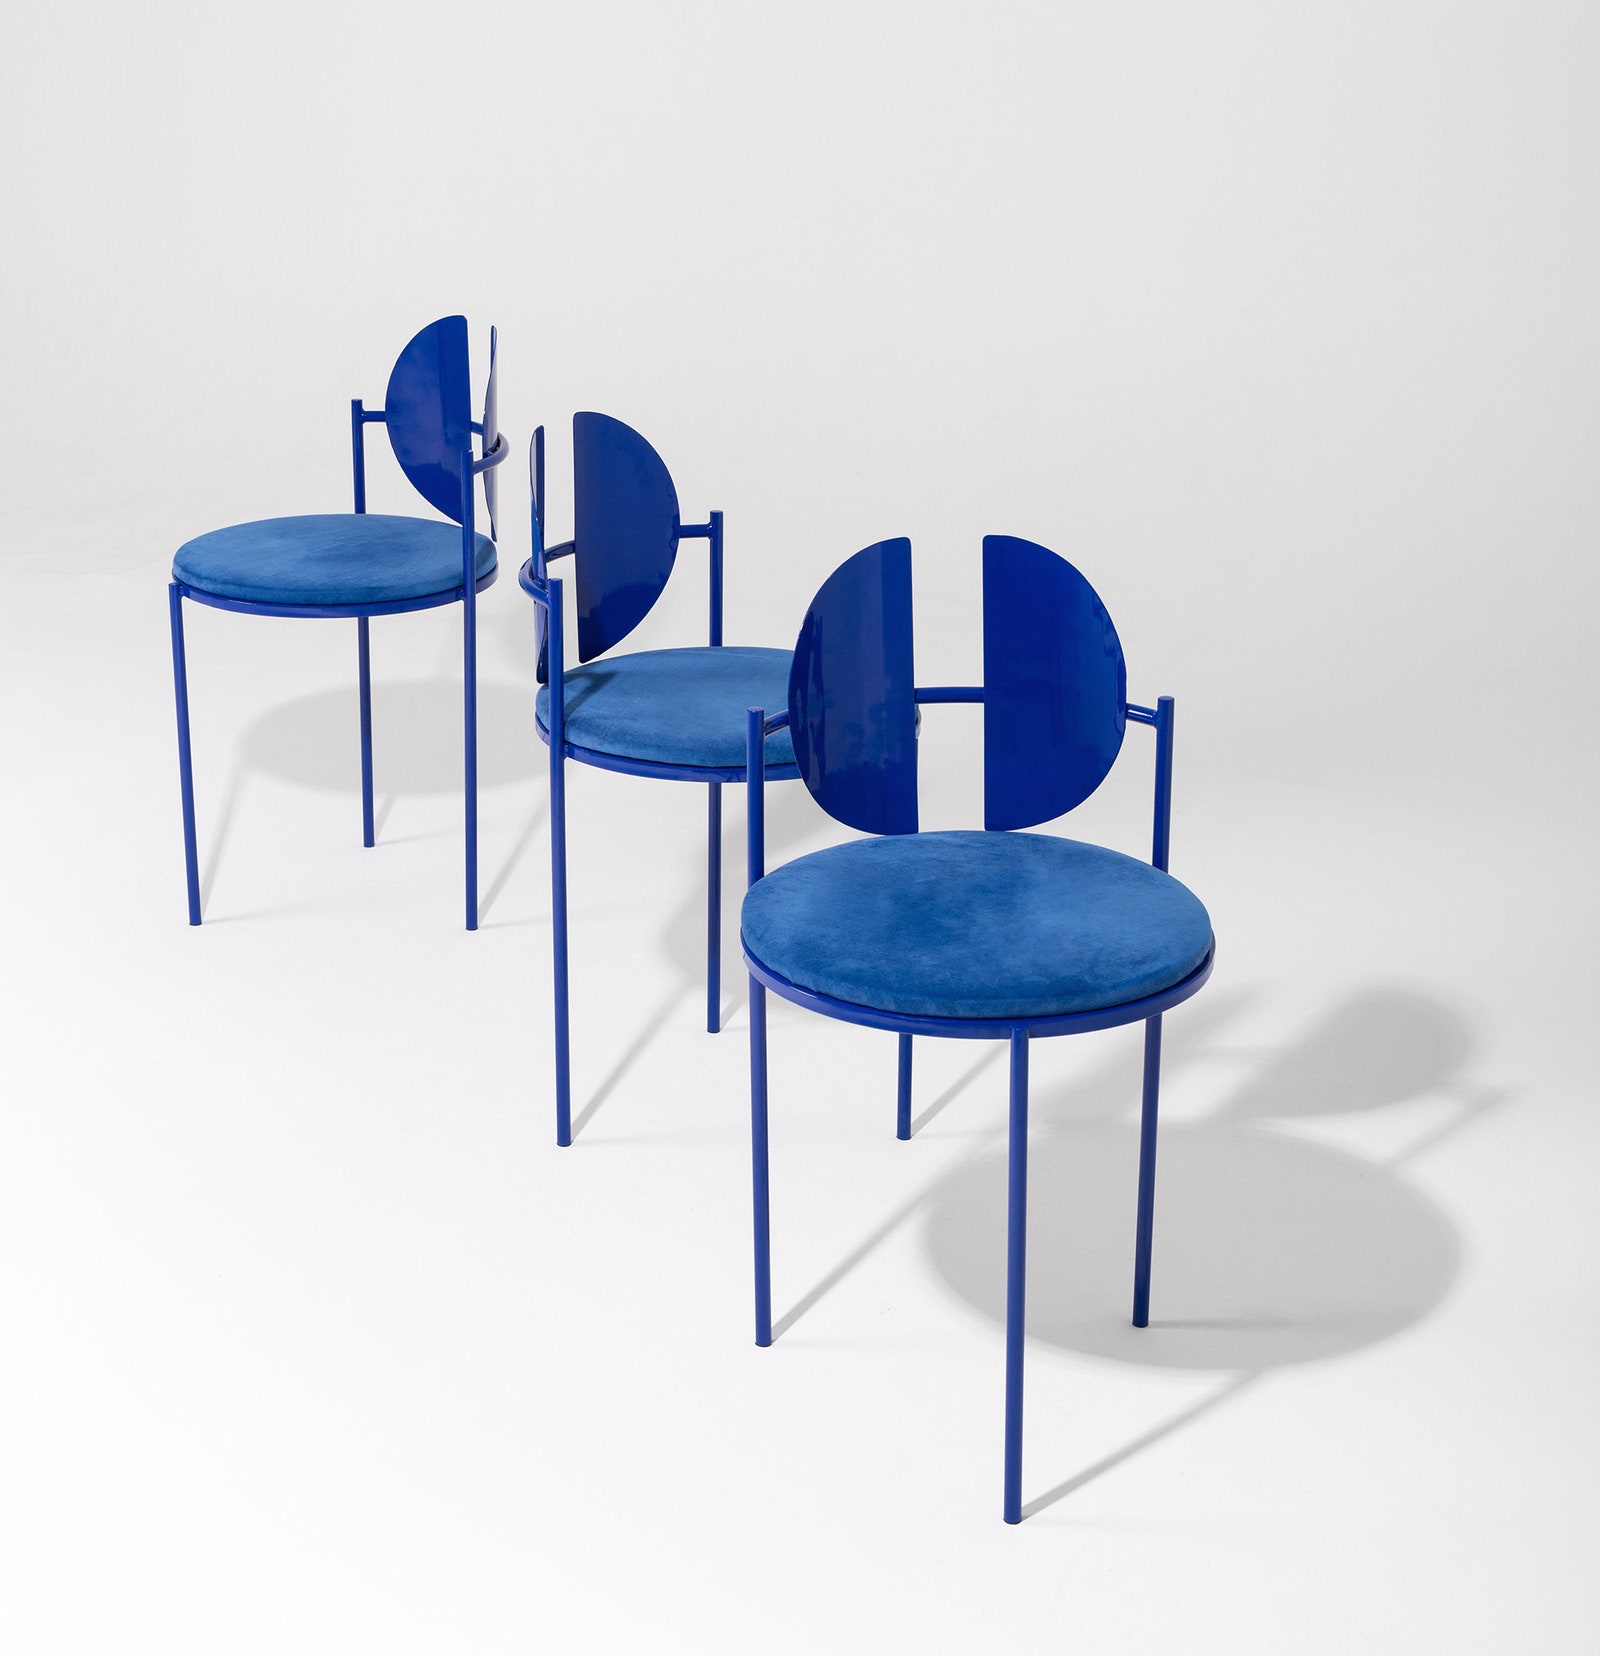 Коллекция геометрической мебели от Анхеля Момбьедро